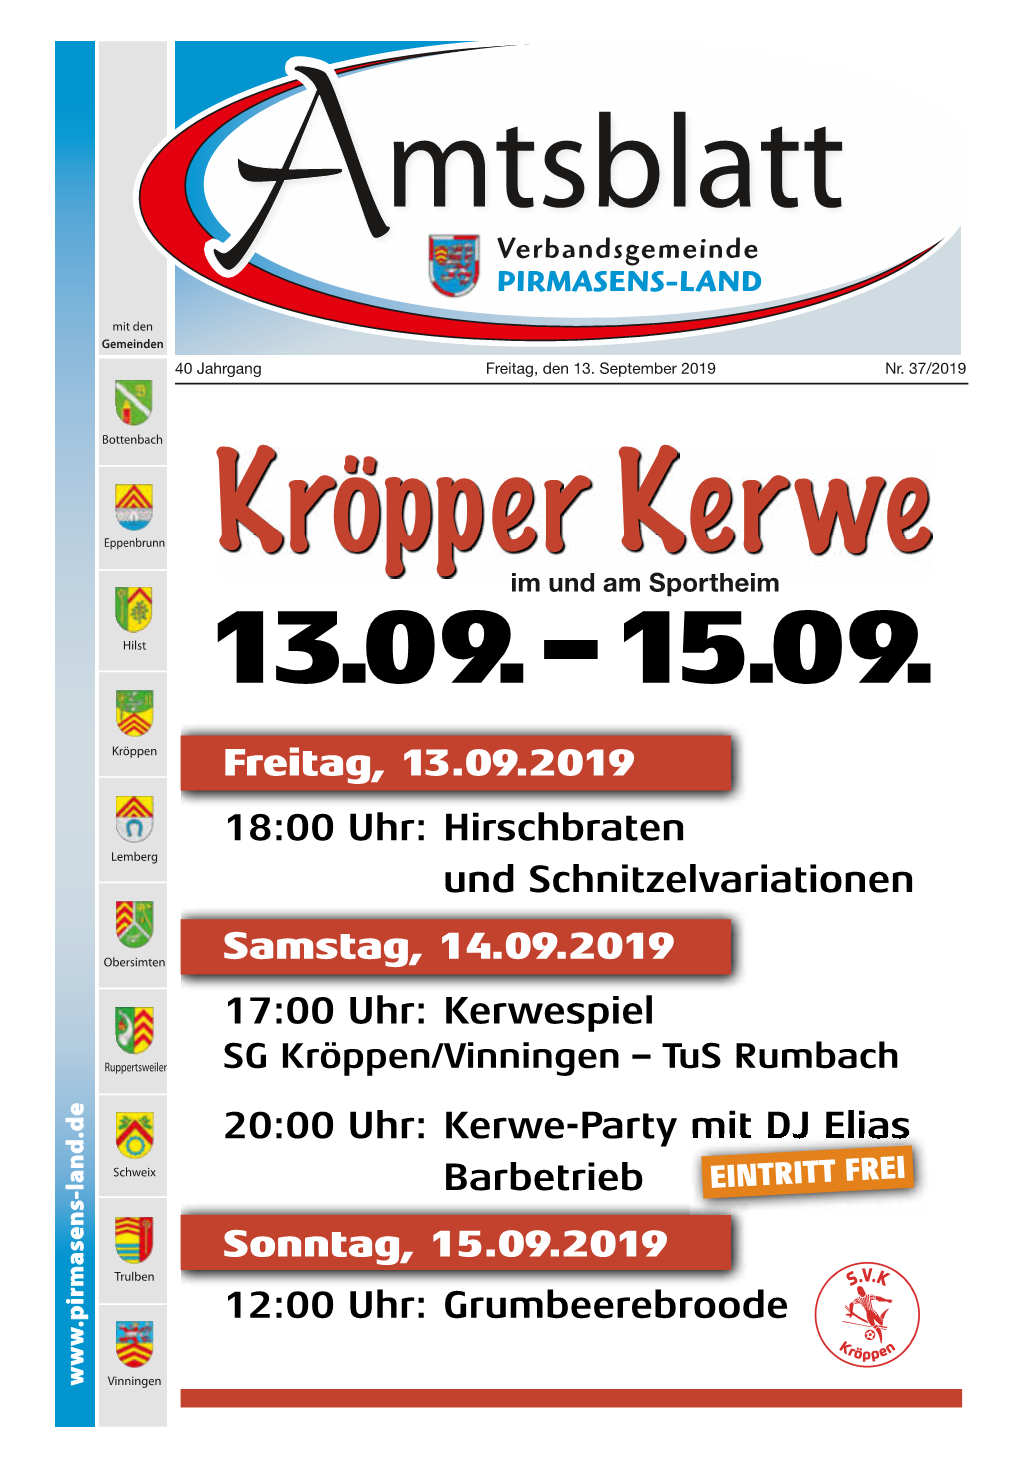 Freitag, 13.09.2019 18:00 Uhr: Hirschbraten Lemberg Und Schnitzelvariationen